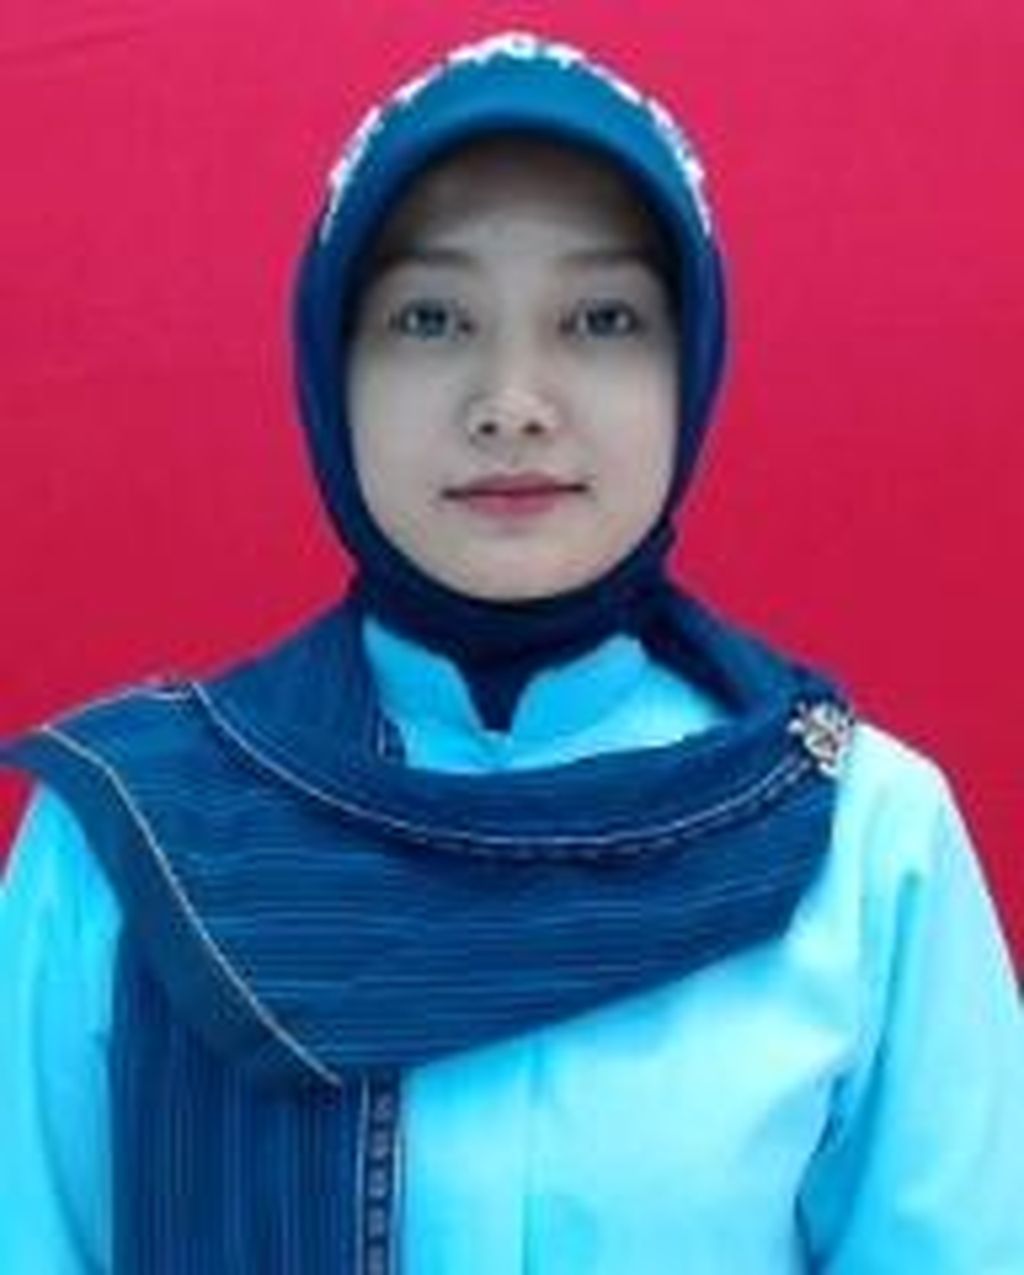 Siti Aminah